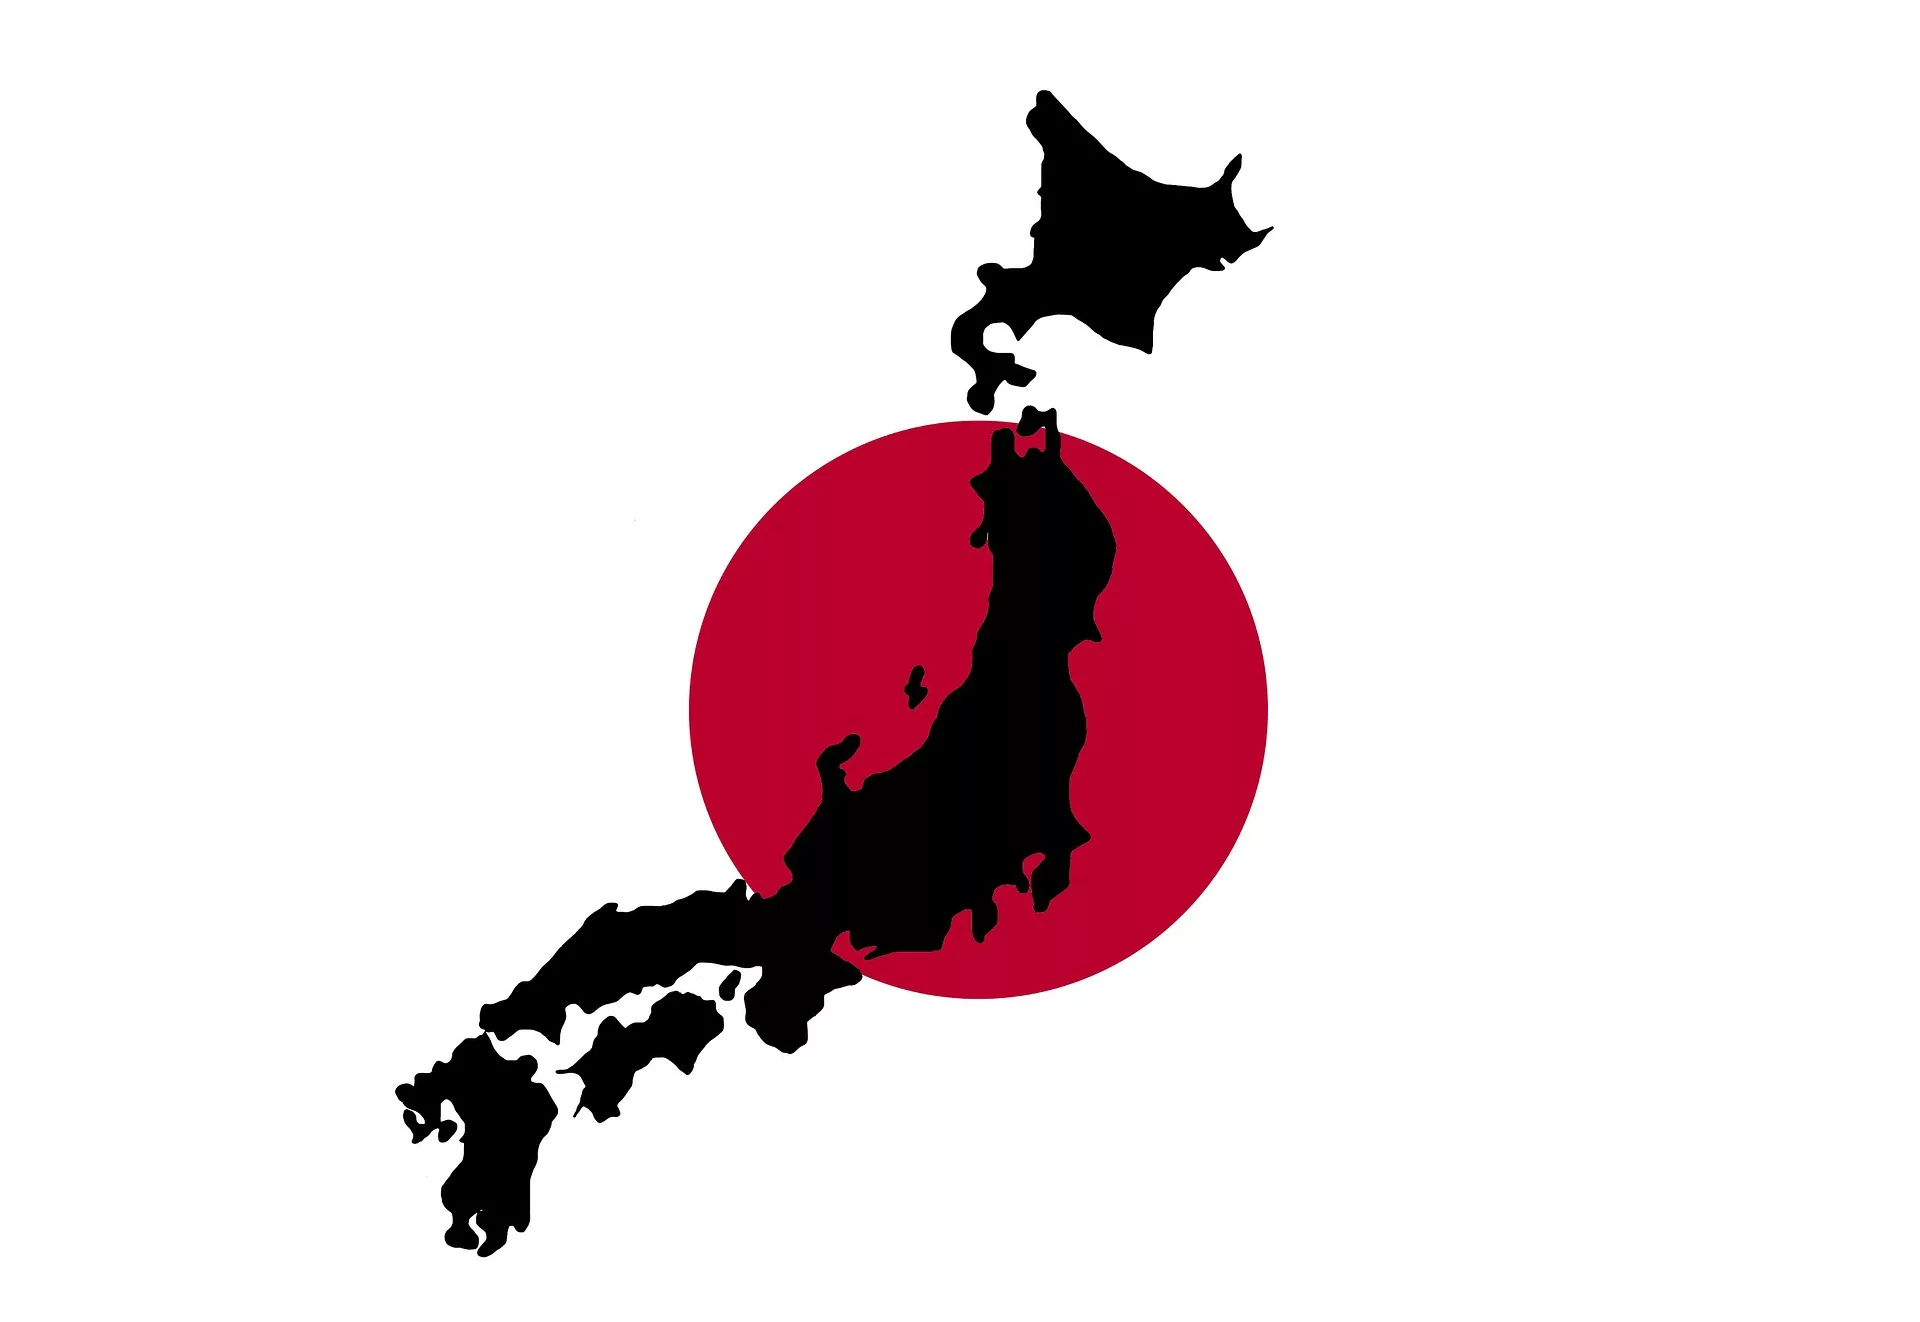 Japan nun als sicher eingestuft